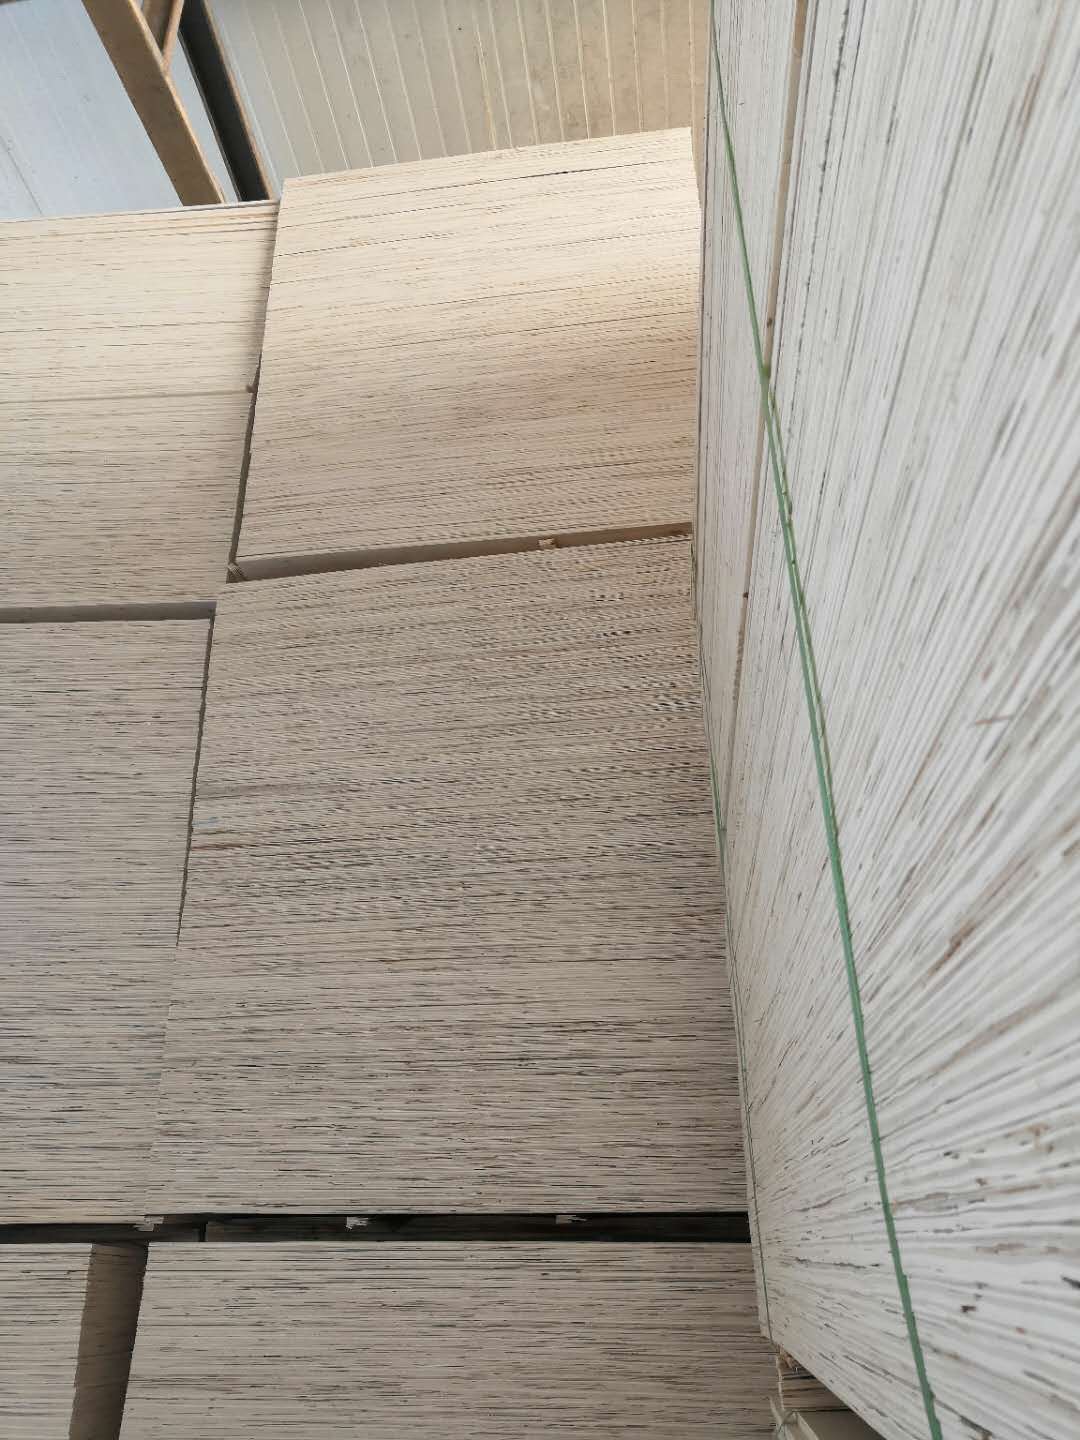 山东包装板厂家河北建筑模板价格天津卖包装板